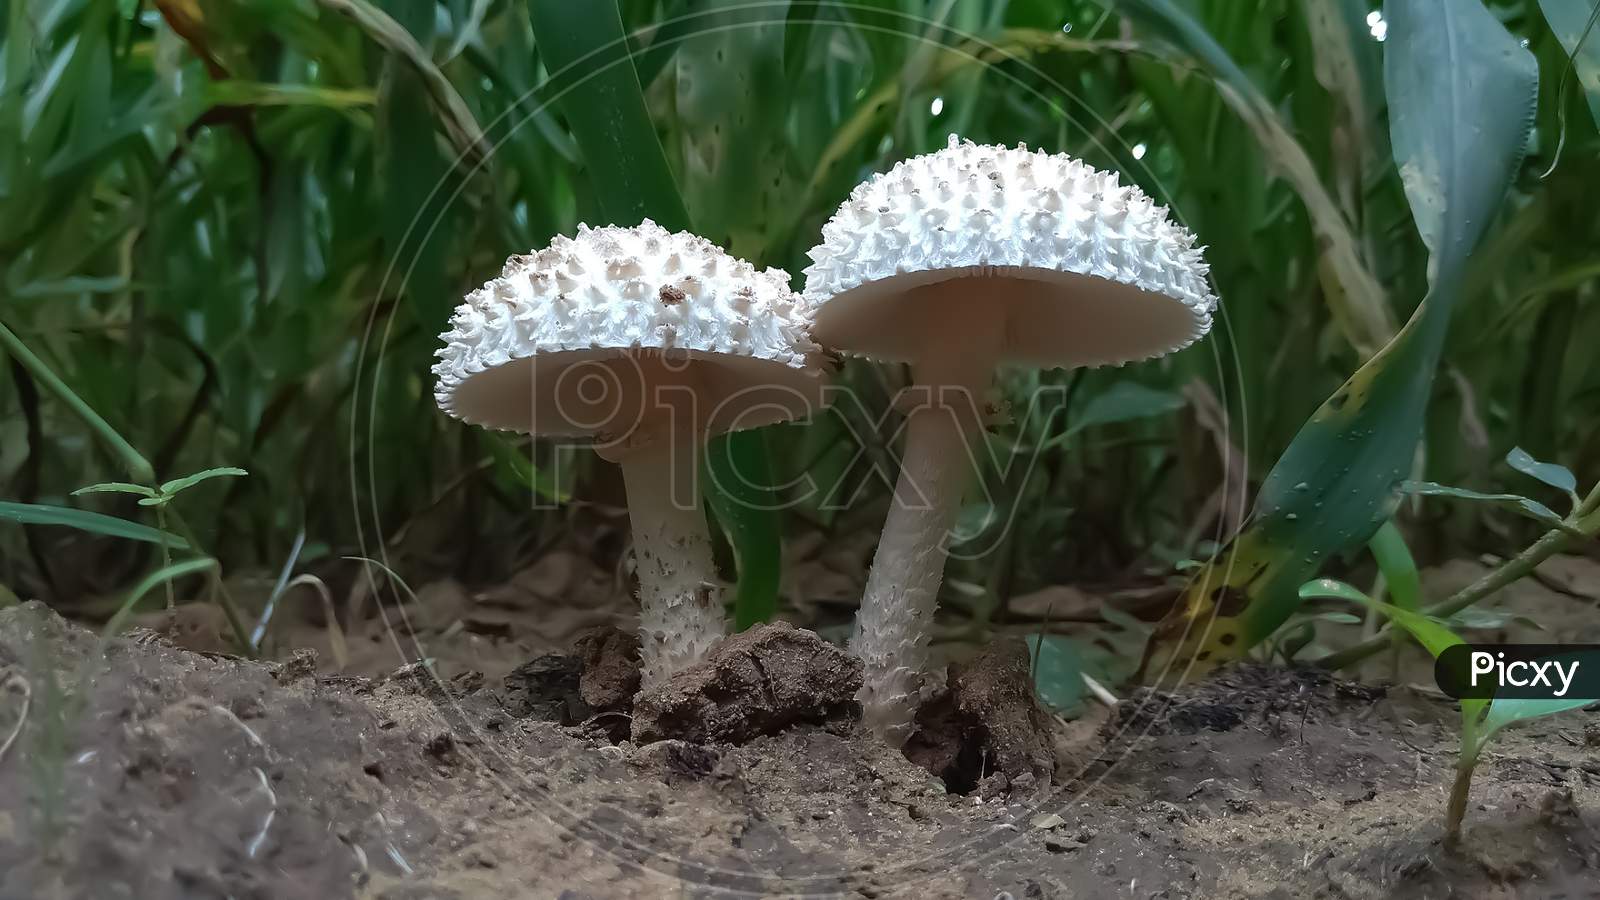 Couple of mushroom